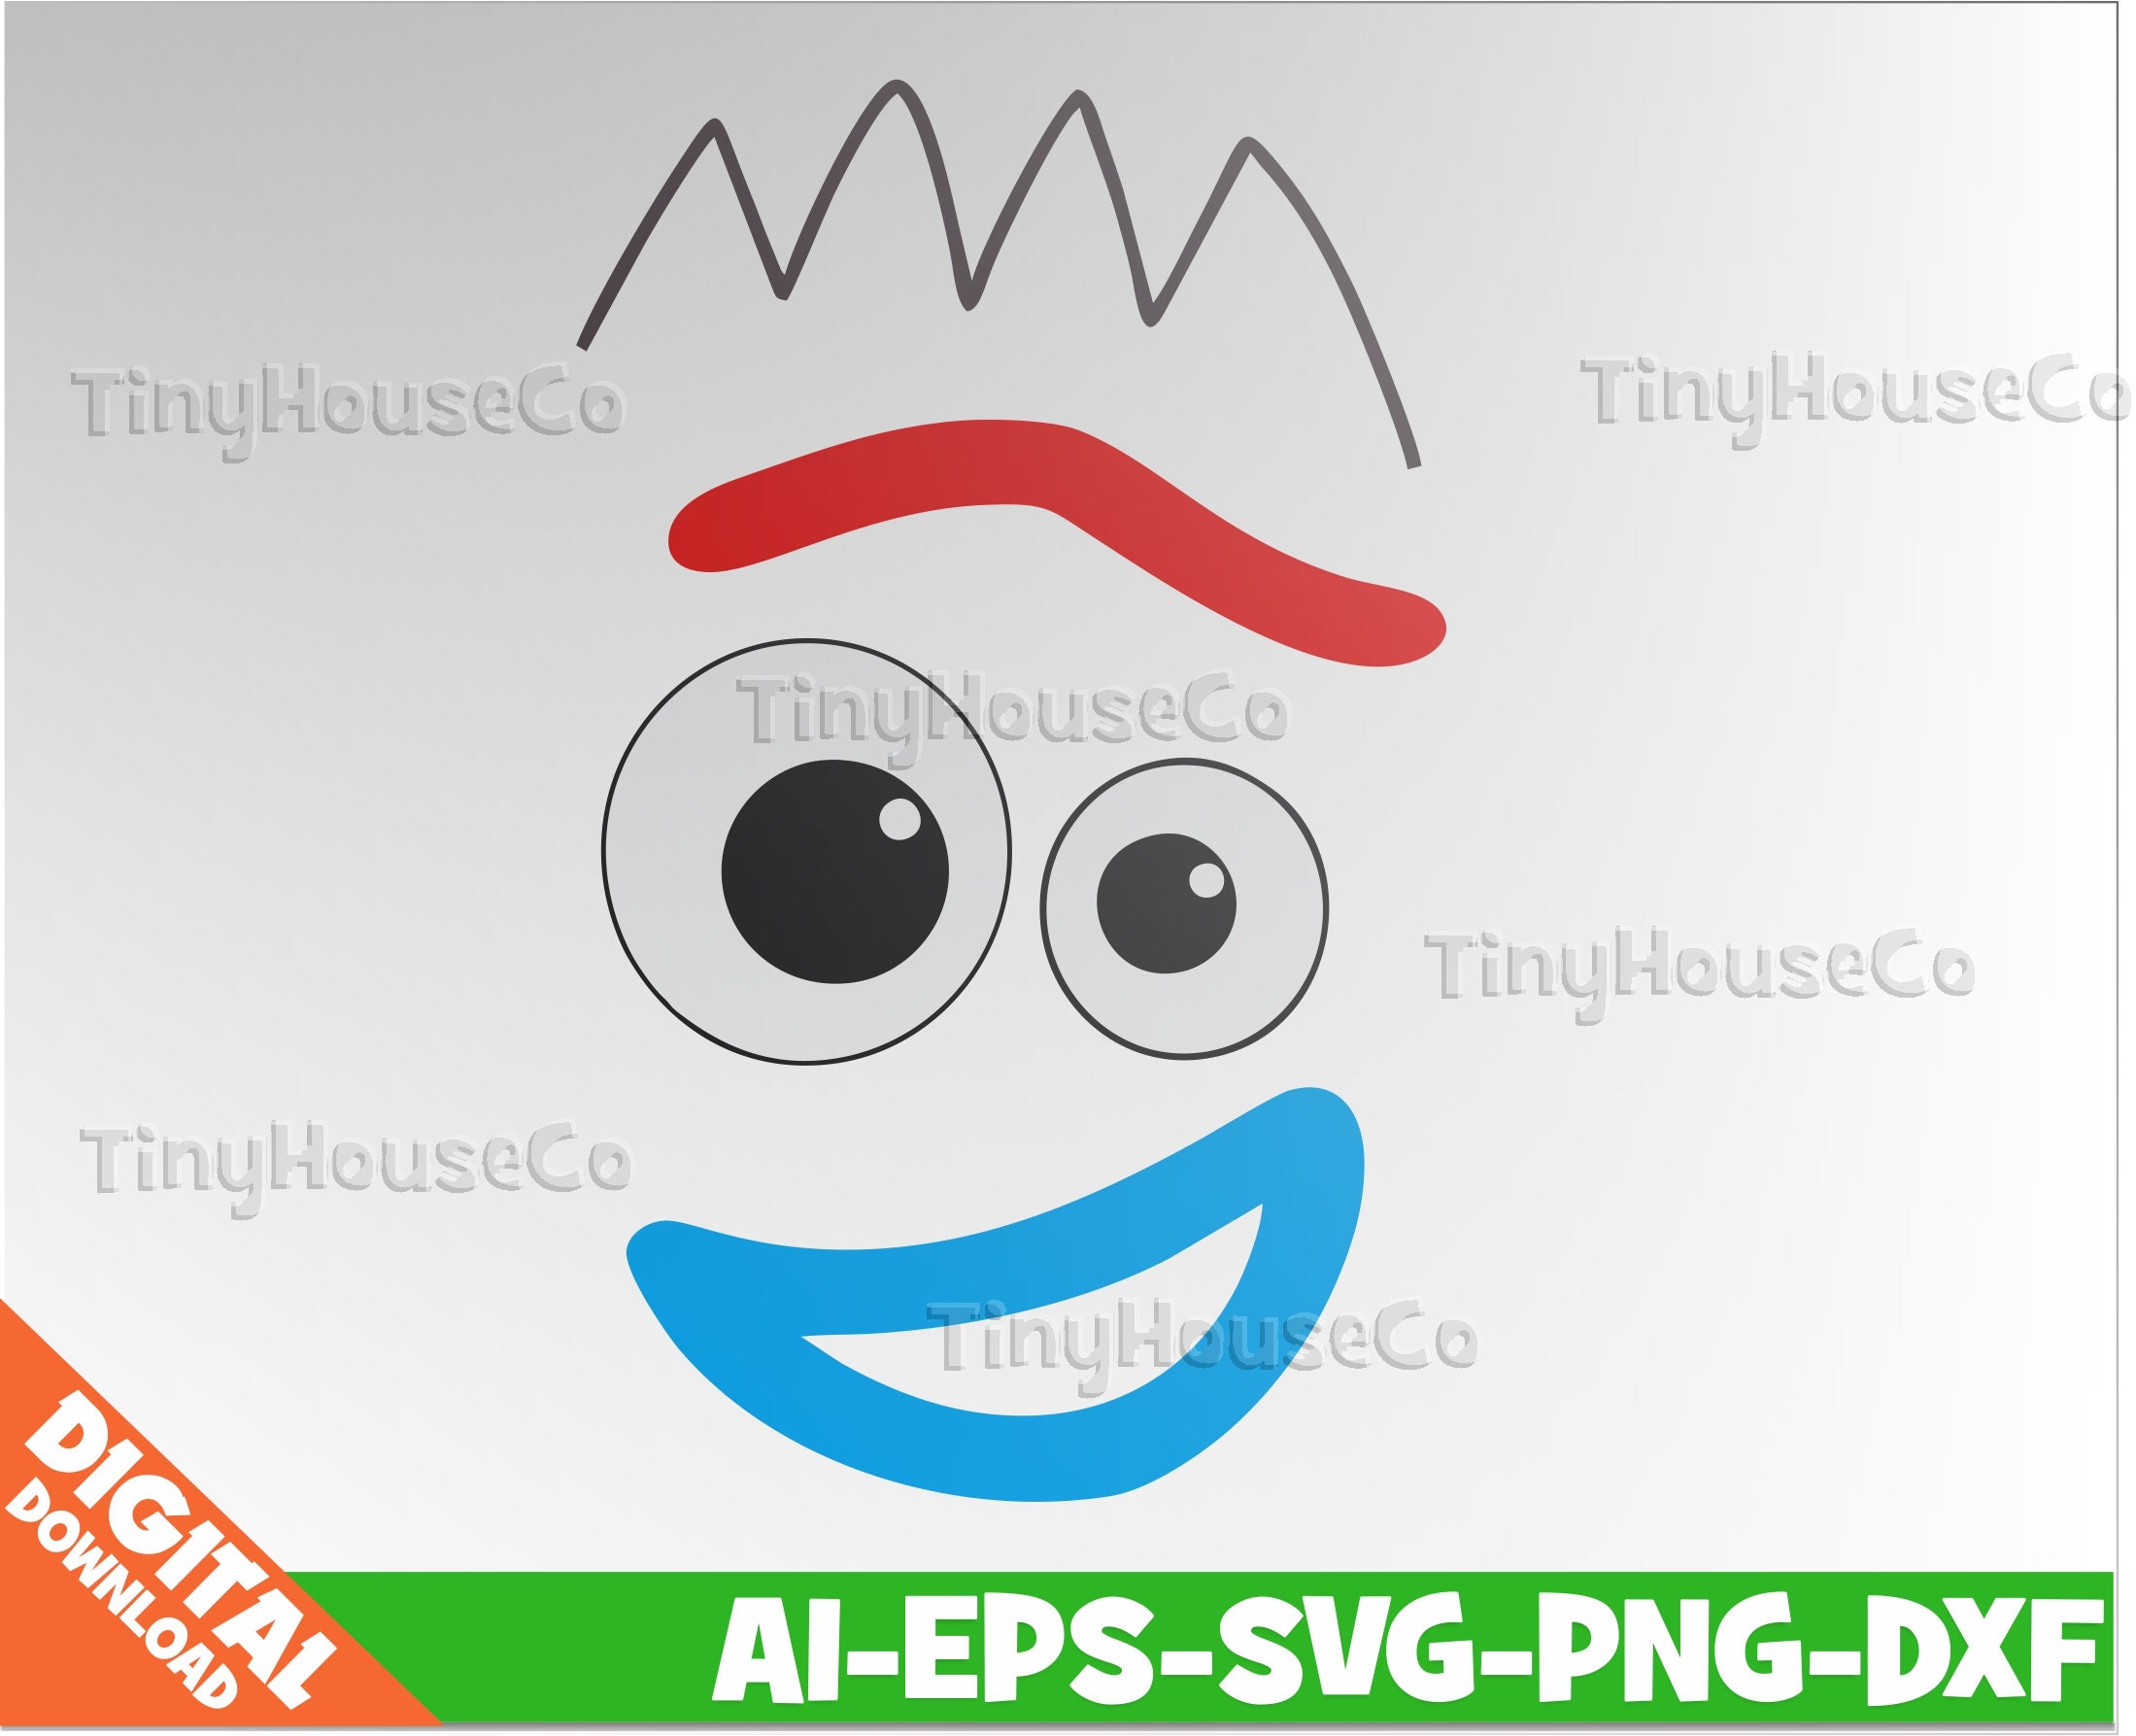 Toy Story Forky Head SVG